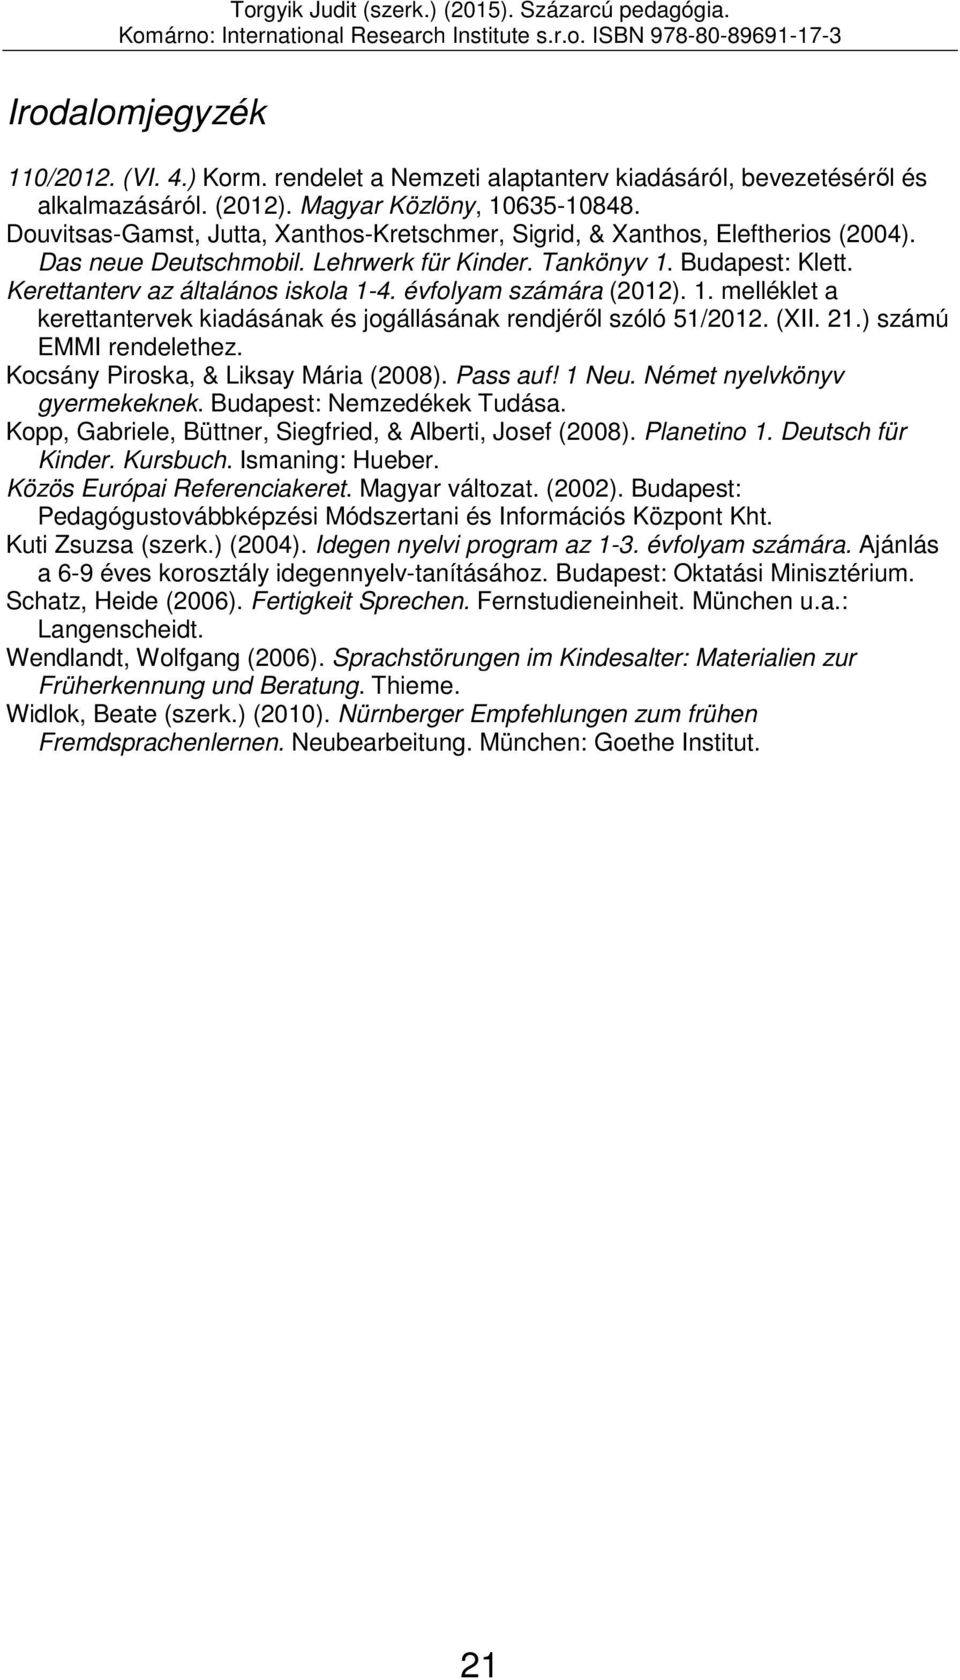 évfolyam számára (2012). 1. melléklet a kerettantervek kiadásának és jogállásának rendjéről szóló 51/2012. (XII. 21.) számú EMMI rendelethez. Kocsány Piroska, & Liksay Mária (2008). Pass auf! 1 Neu.